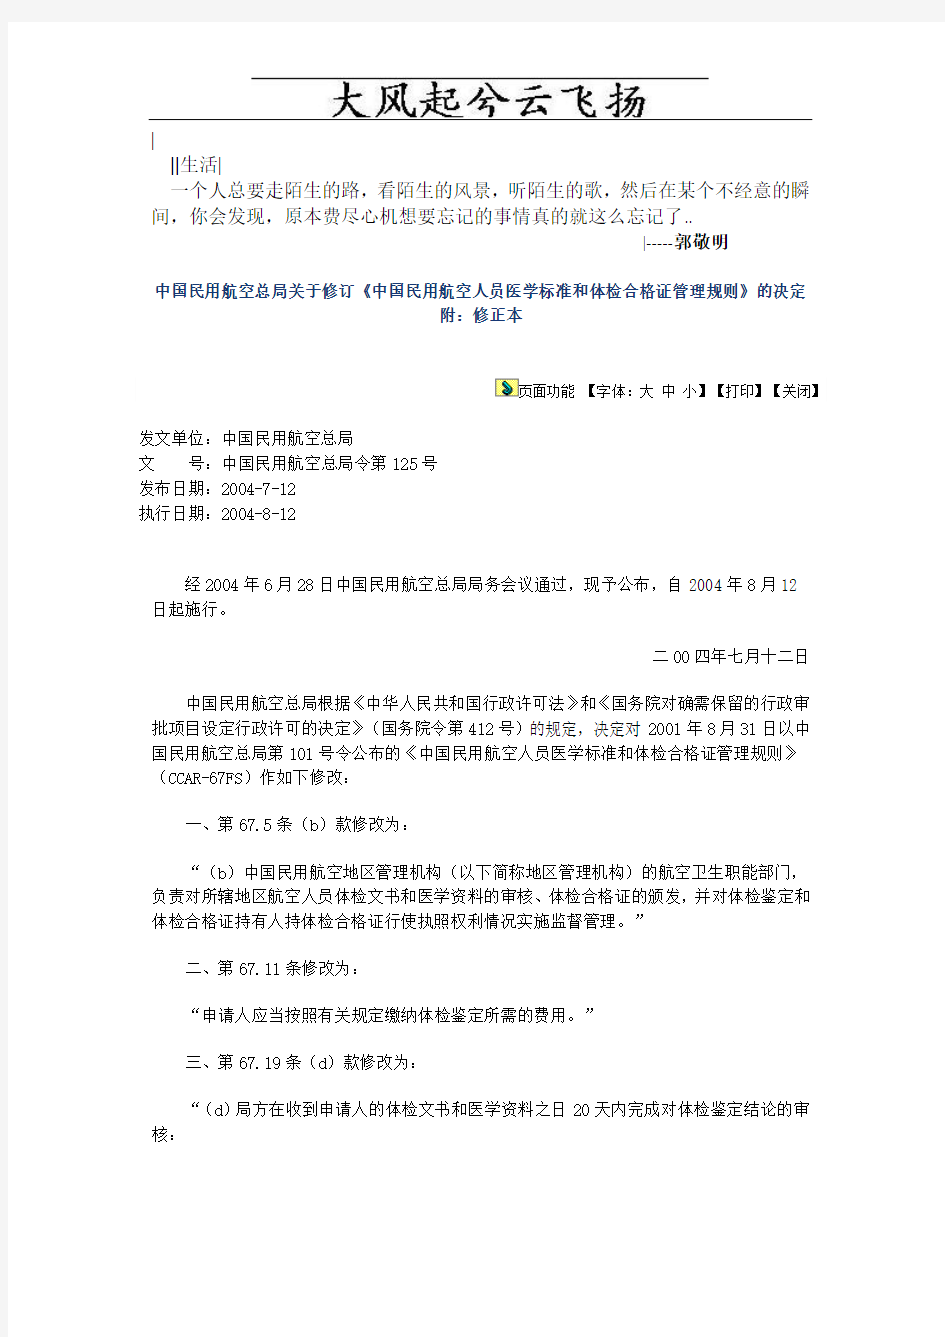 Bjorit101号令修订《中国民用航空人员医学标准和体检合格证管理规则》的决定